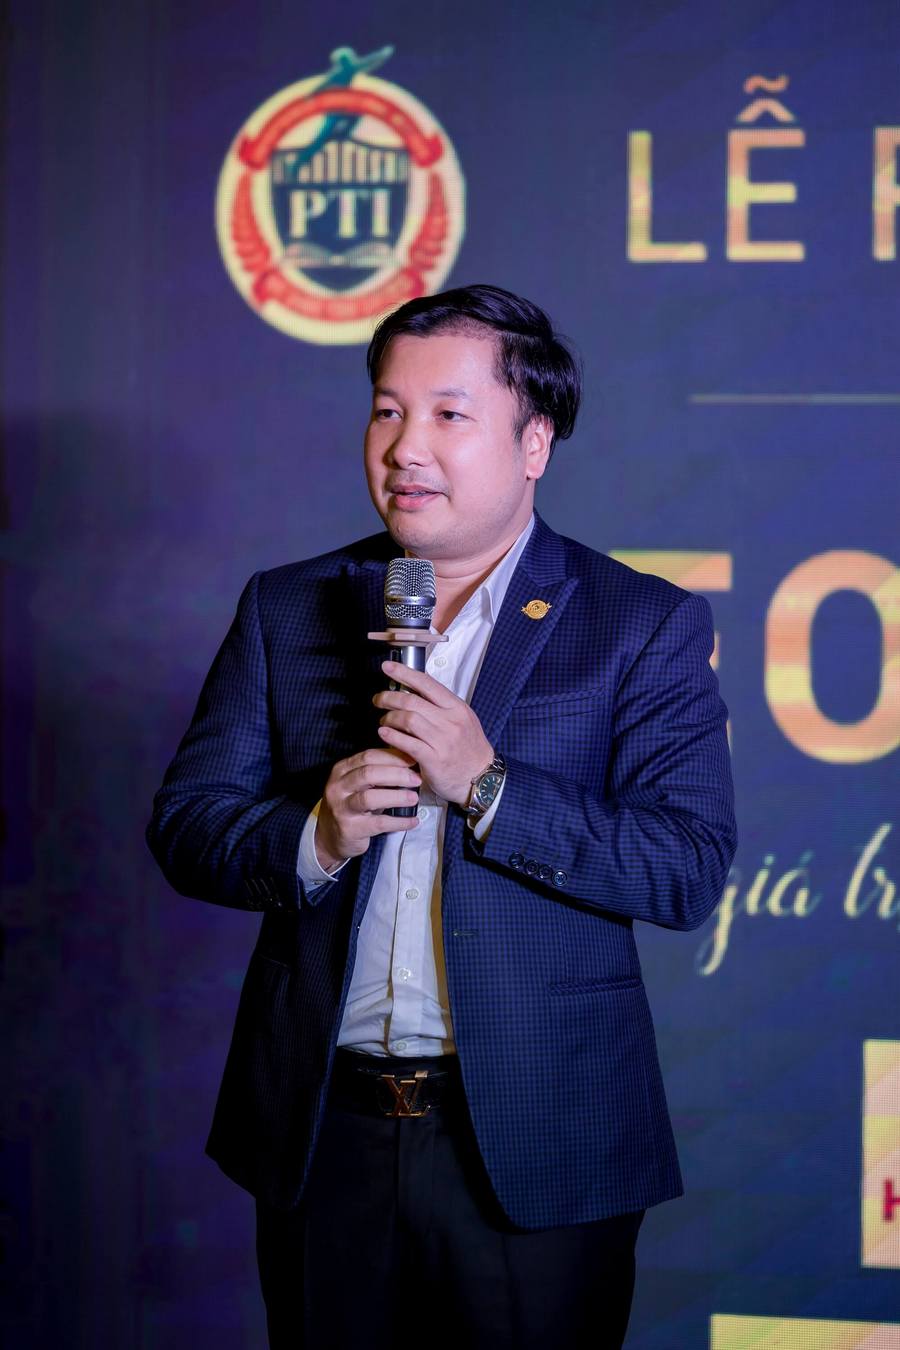 Ông Triệu Văn Dương - Chủ tịch - Tổng Giám đốc Tổ chức Giáo dục Đào tạo PTI